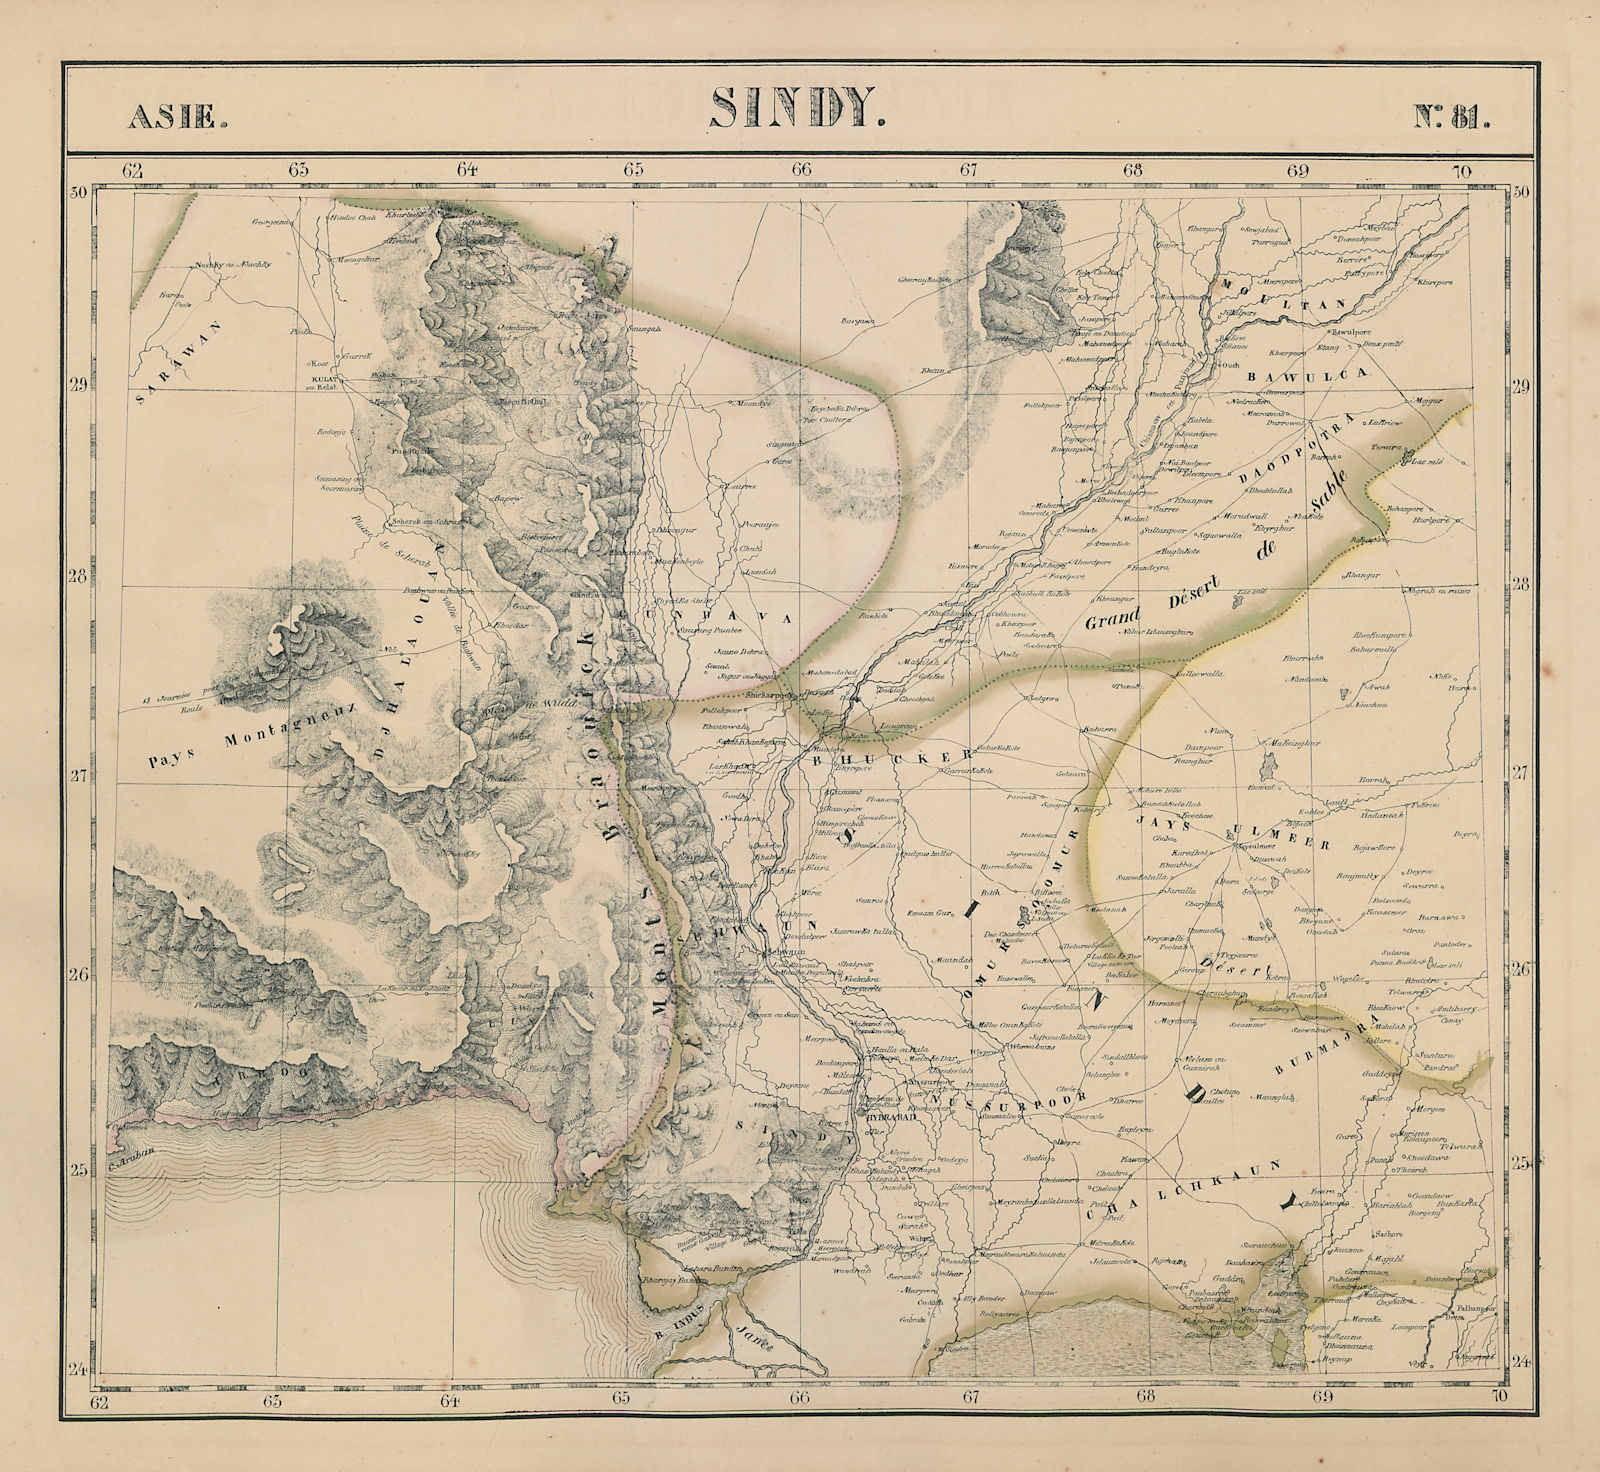 Associate Product Asie. Sindy #81 SE Pakistan. Western Rajasthan. India VANDERMAELEN 1827 map